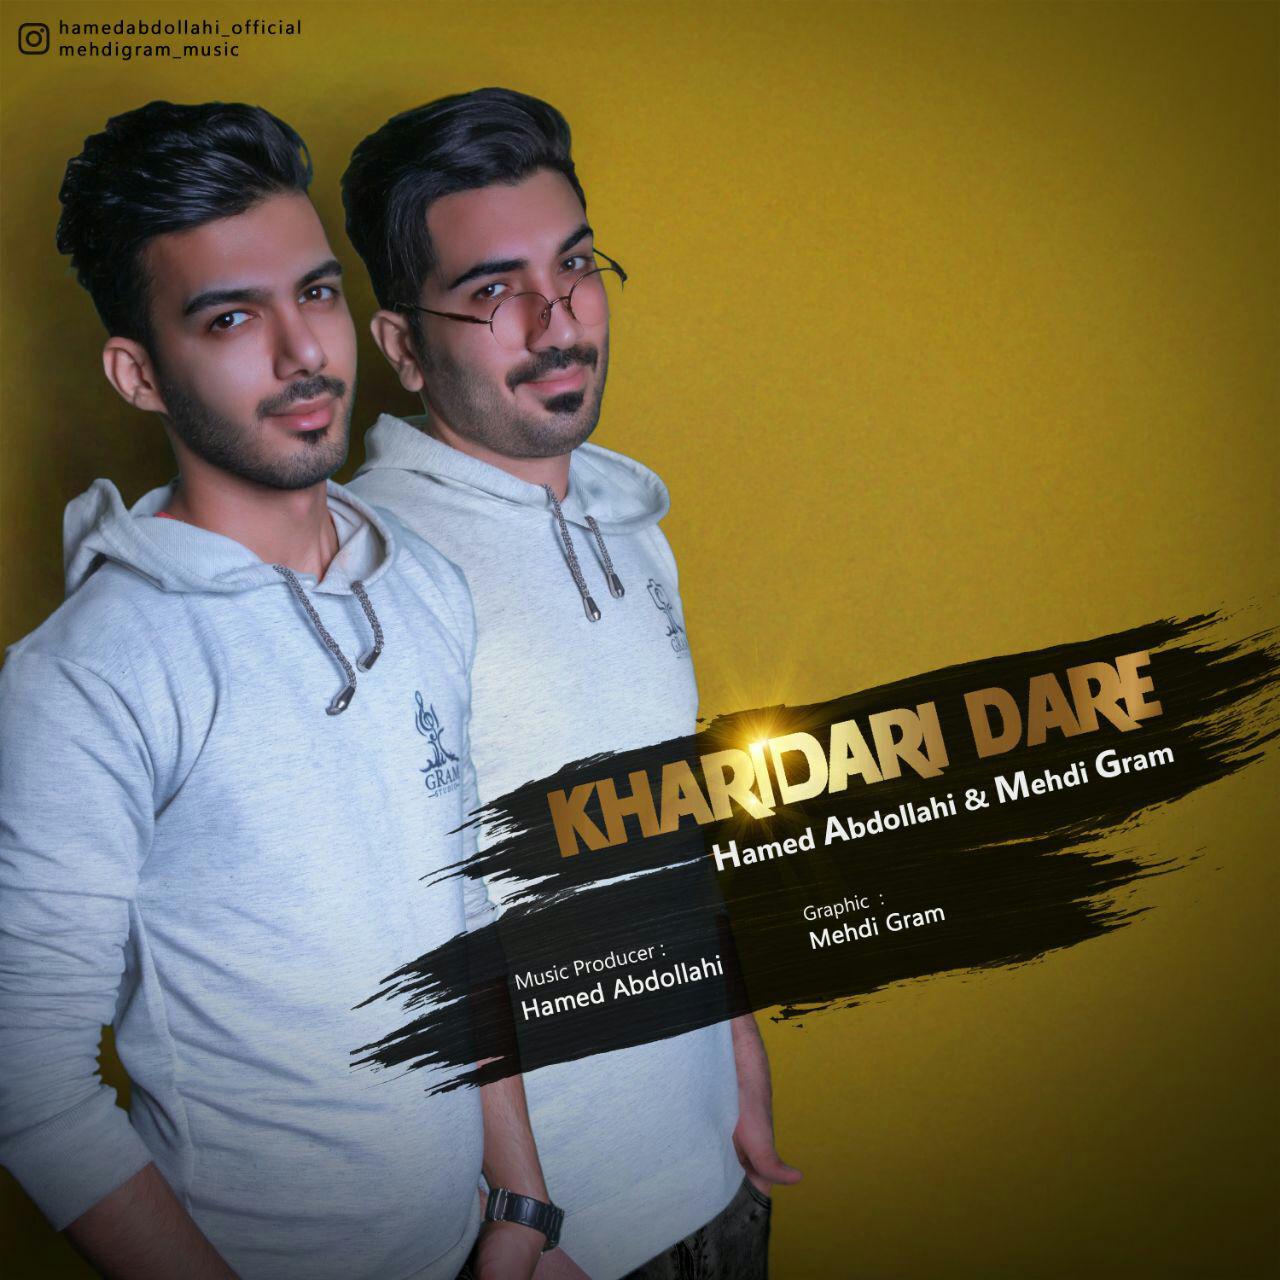  دانلود آهنگ جدید حامد عبداللهی و مهدی گرام - خریداری داره | Download New Music By Hamed Abdollahi & Mehdi Gram  - Kharidari Dare 